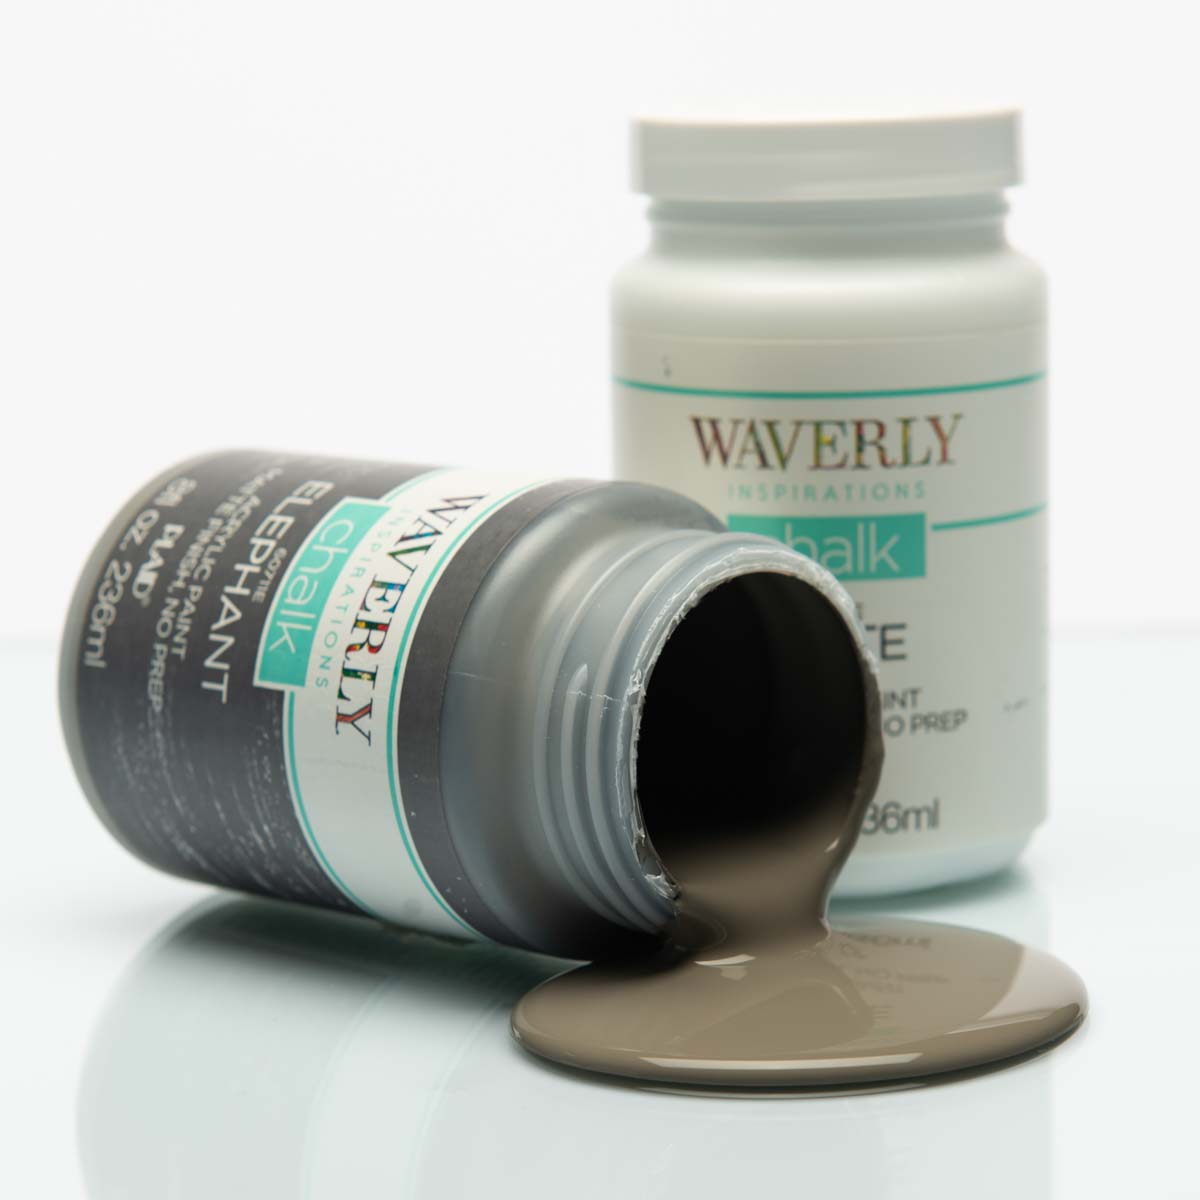 Waverly ® Inspirations Chalk Finish Acrylic Paint Set - White, Elephant, Ink, 3 pc. - 13405